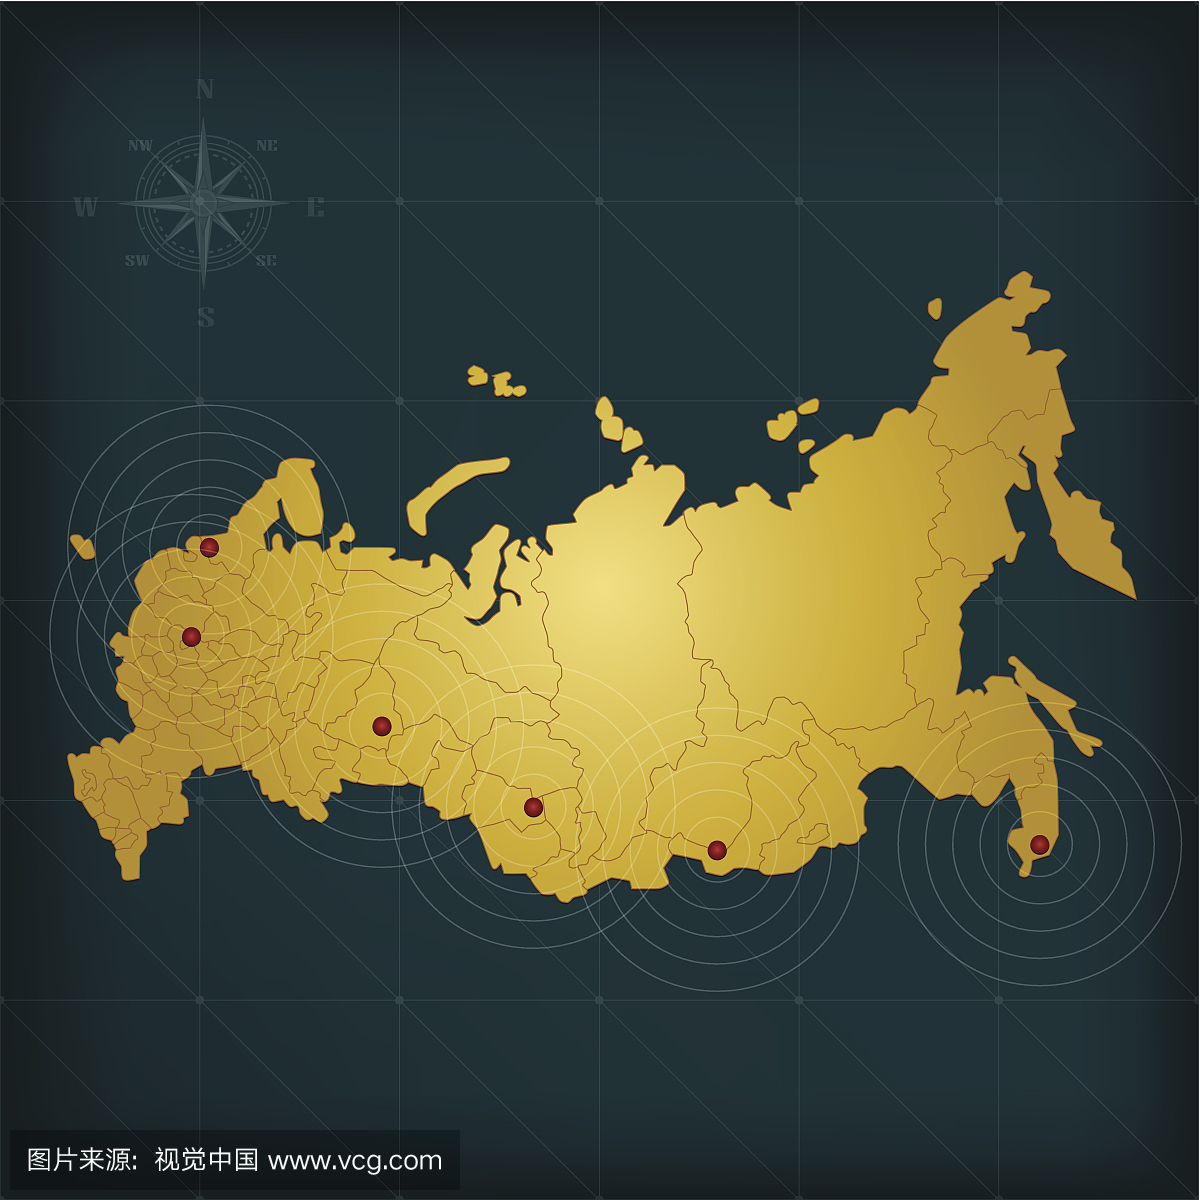 俄罗斯行政区划_图片_互动百科